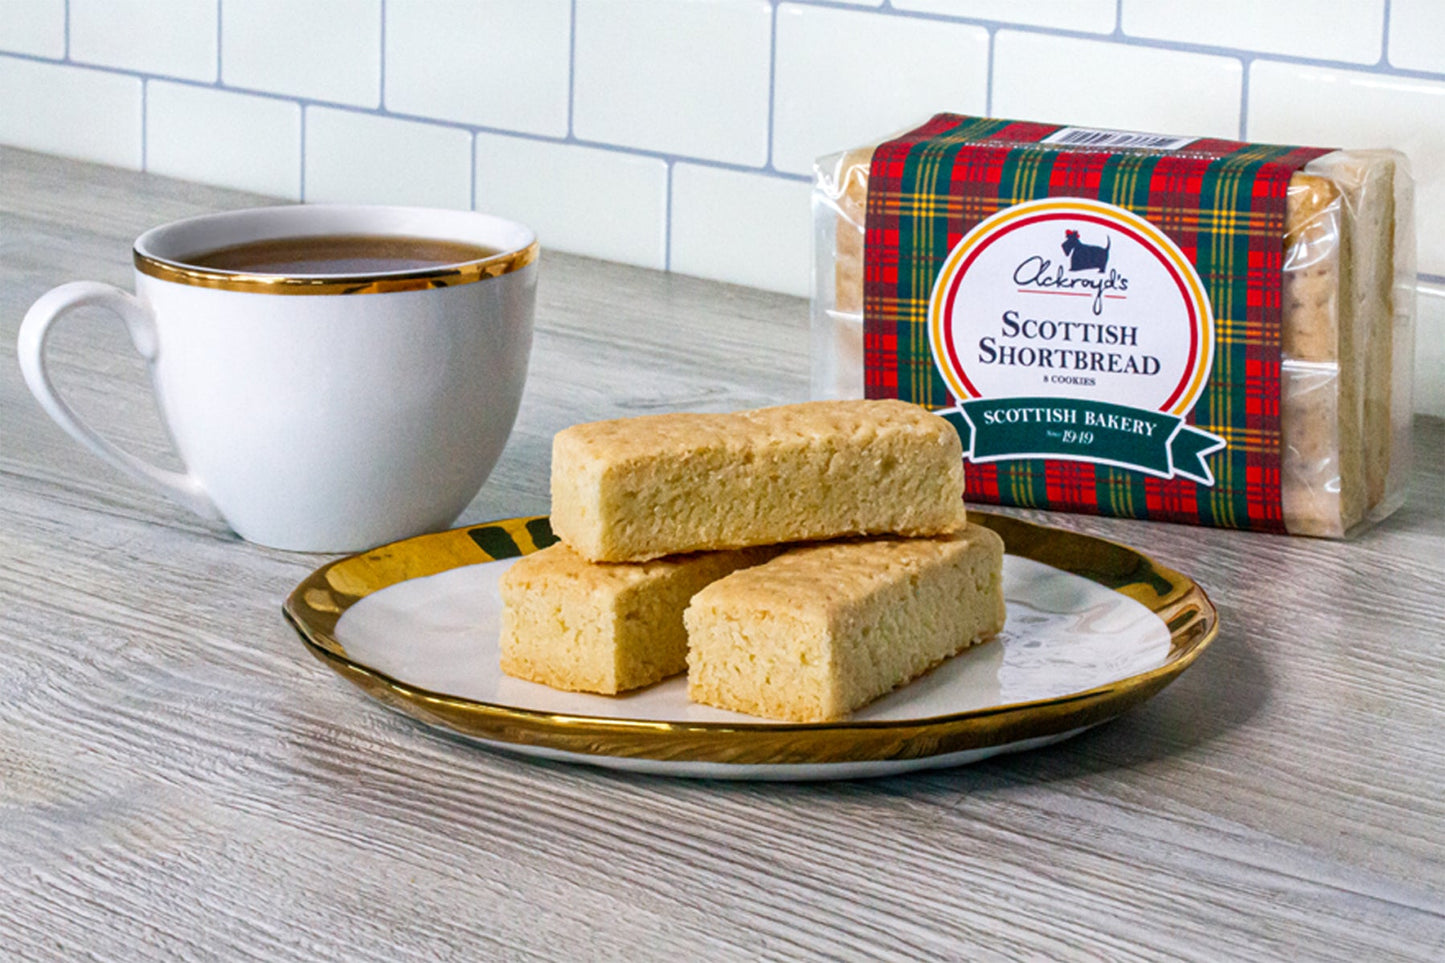 Ackroyd's Scottish Shortbread: Traditional - Ackroyd's Scottish Bakery